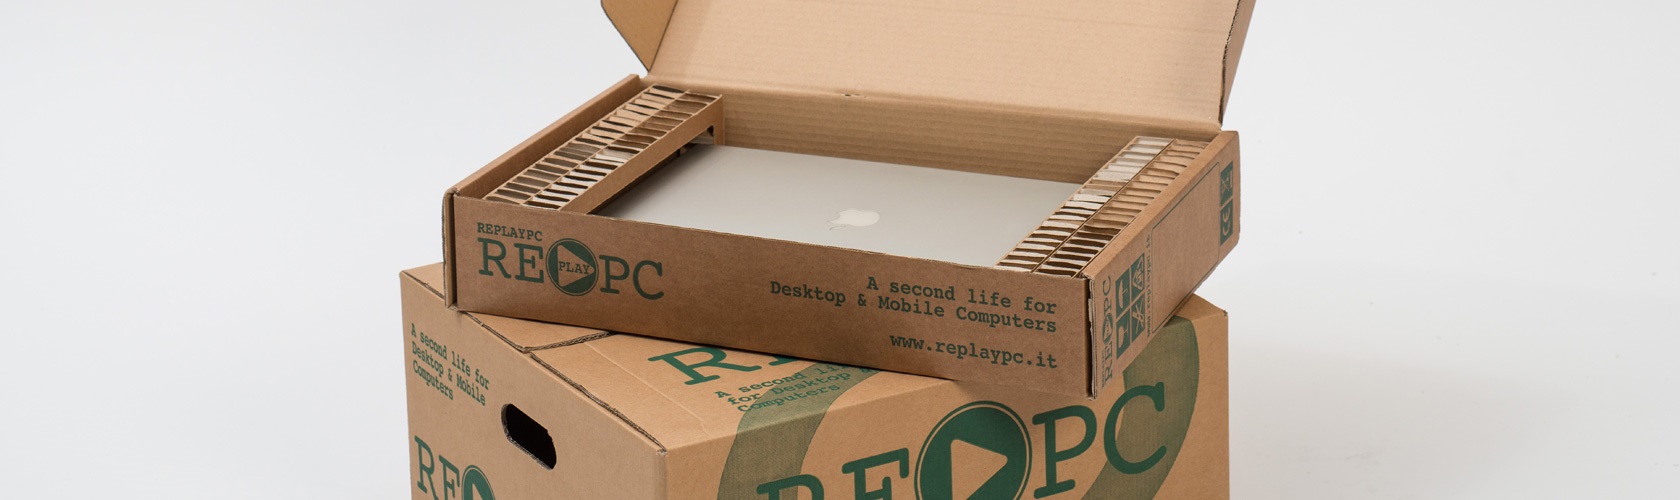 Inbox Matera Pluriball - Imballaggio imballaggi e scatole